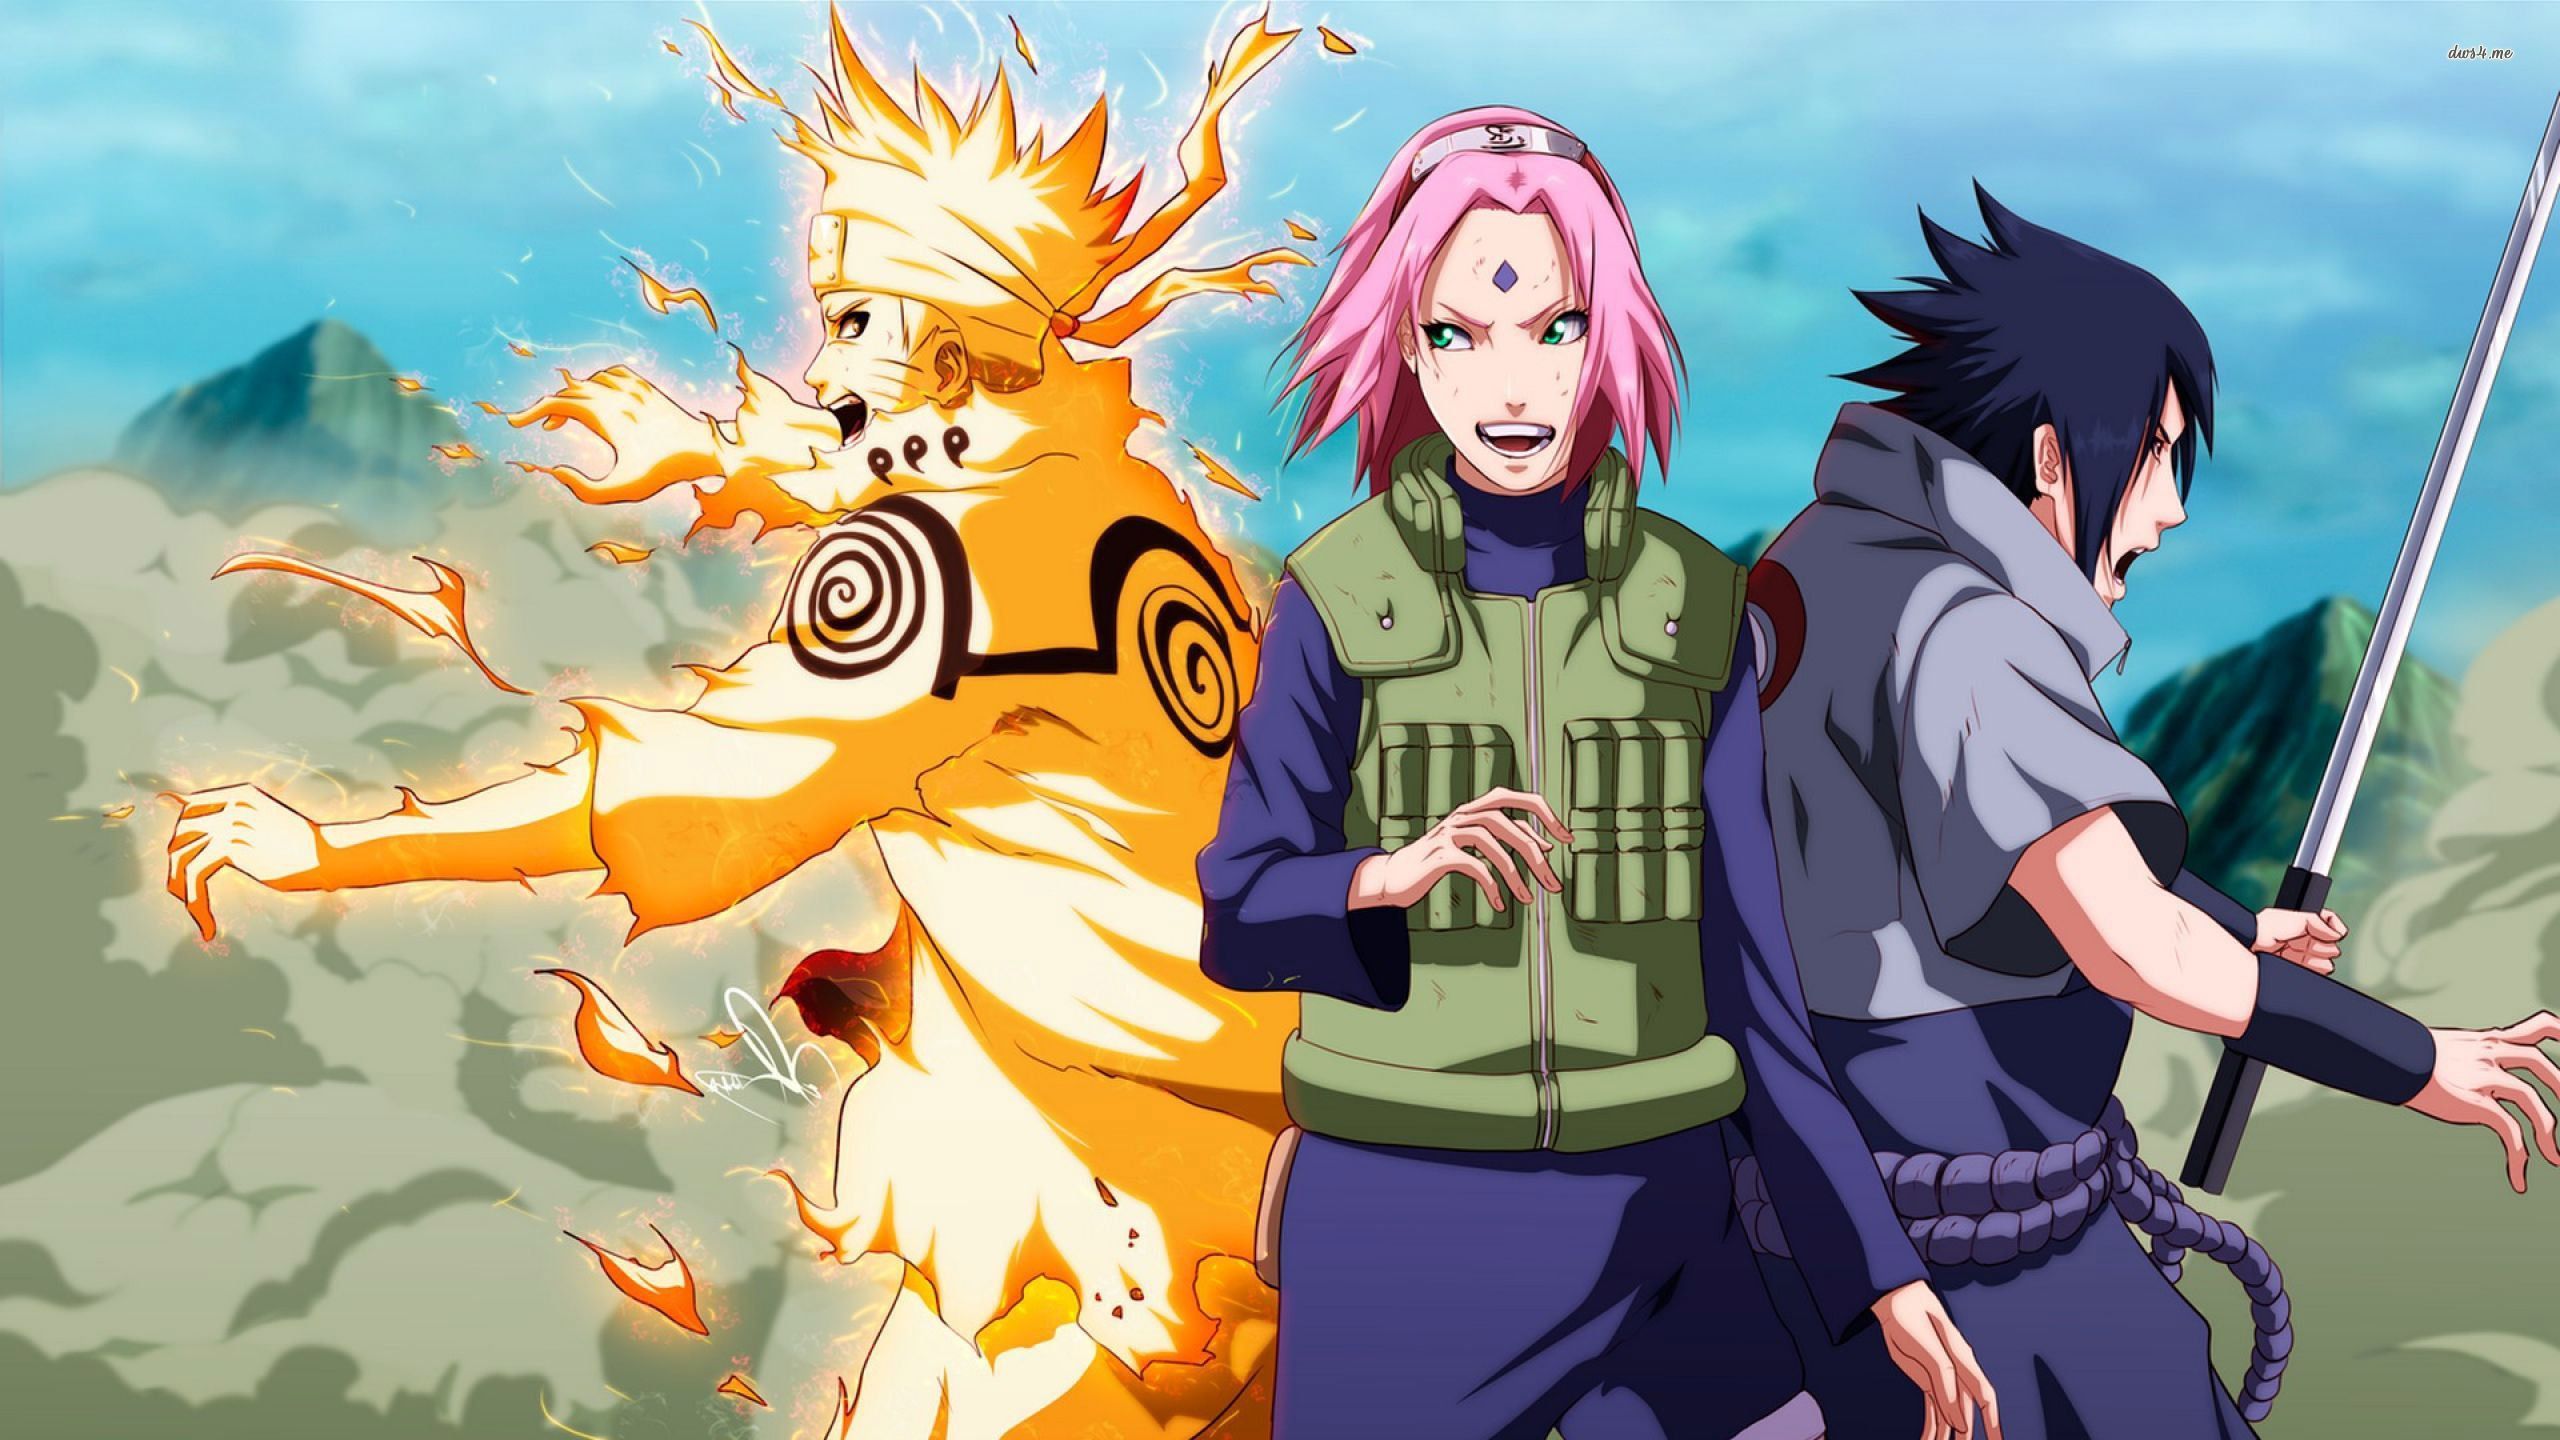 Hình nền manga Naruto cho máy tính sẽ mang đến cho bạn trải nghiệm thú vị và đầy màu sắc. Chỉ cần một lần tải về, bạn có thể thấy được tinh túy của bộ manga cùng với những người bạn trong đấy.